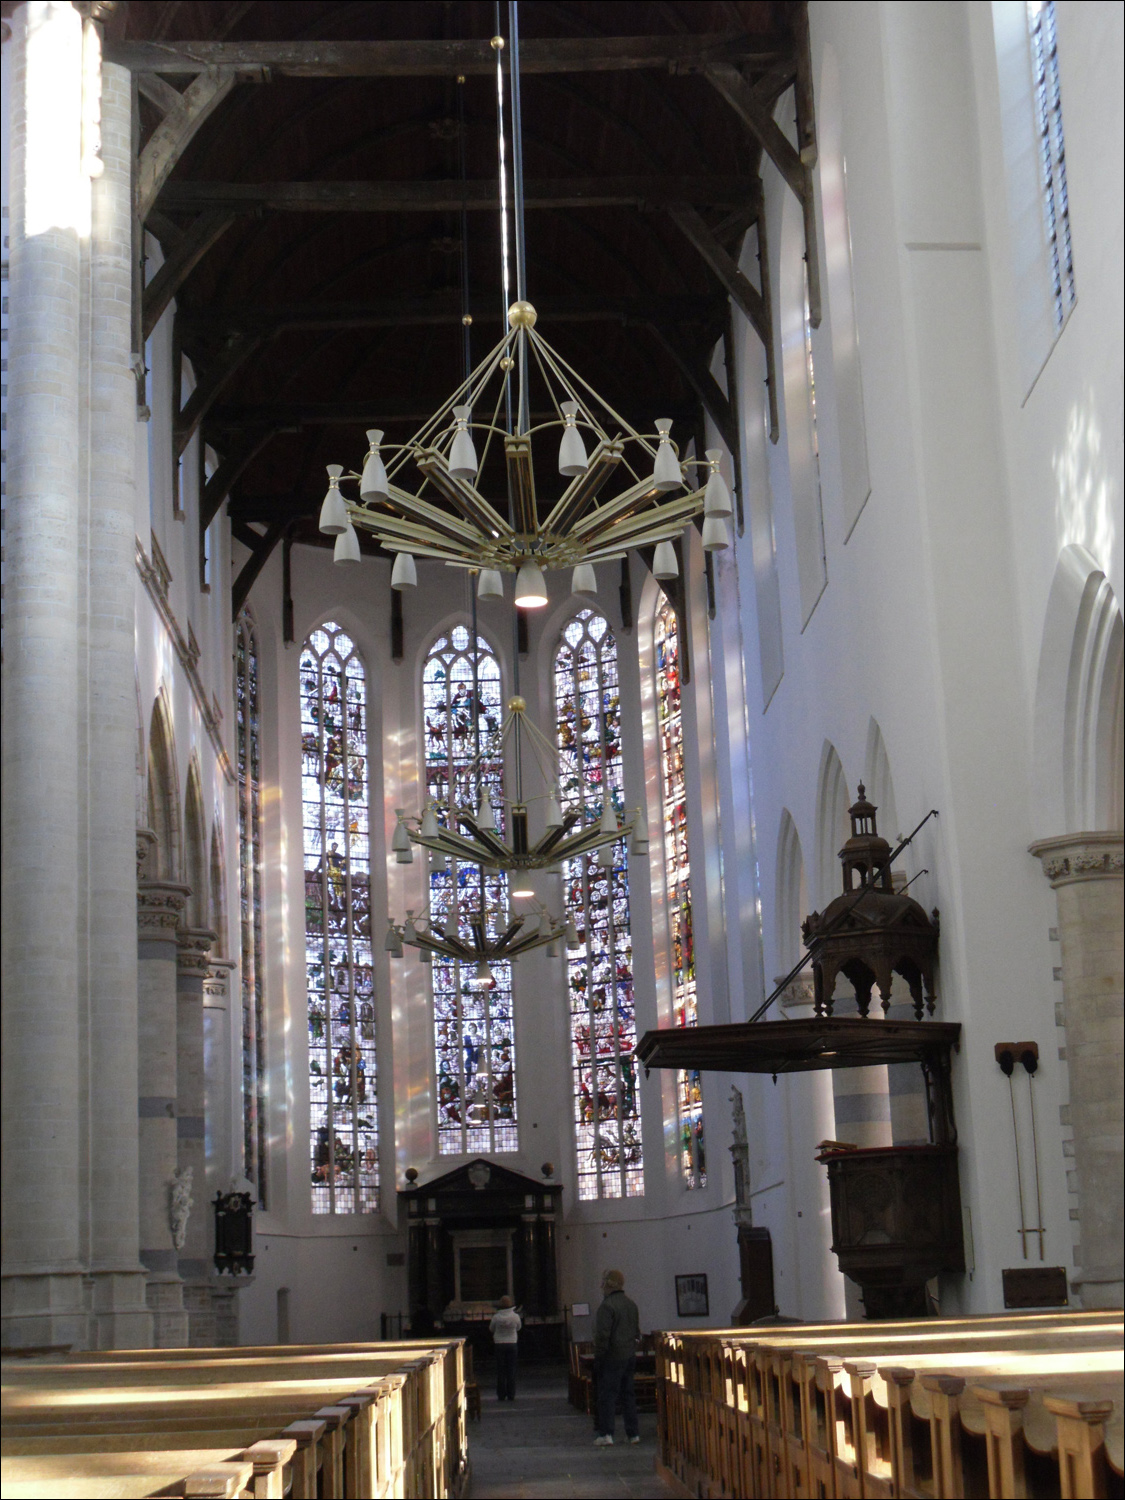 Oude Kerk-View from inside church